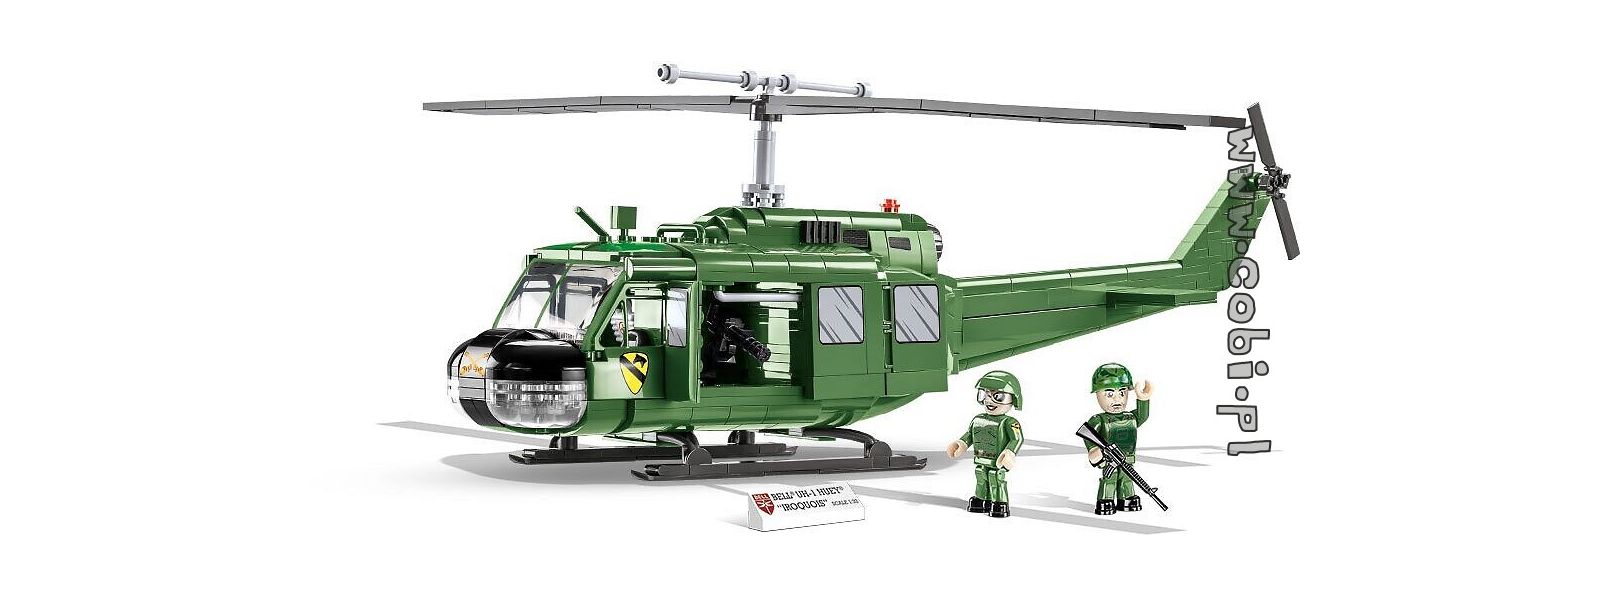 Historia z COBI. Helikopter Bell UH-1 Iroquois - znak rozpoznawczy amerykańskiej wojny w Wietnamie